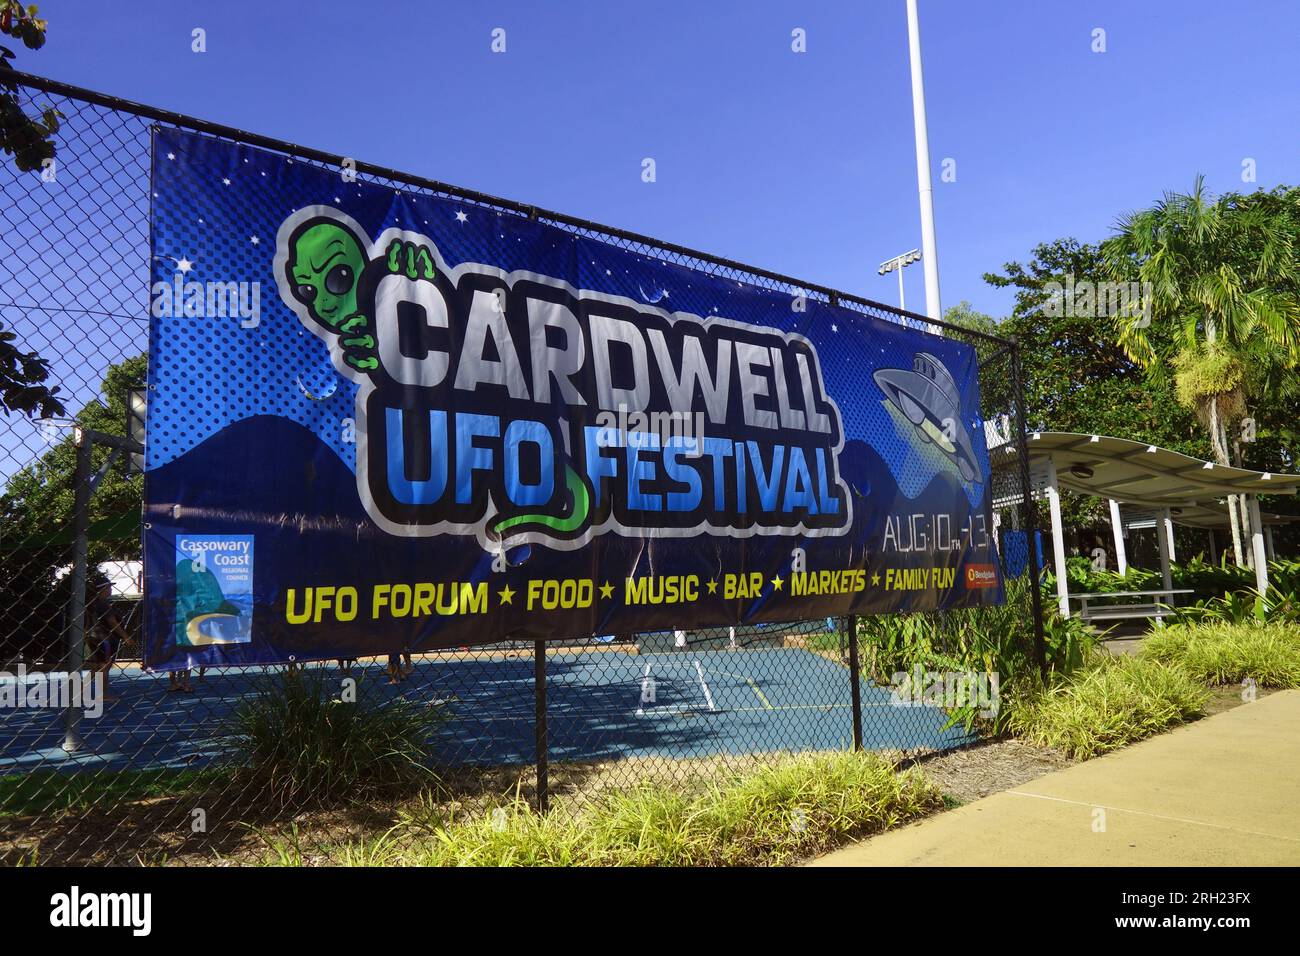 Bannière présentant le Cardwell UFO Festival 2023, Cardwell, Queensland, Australie. Pas de PR Banque D'Images